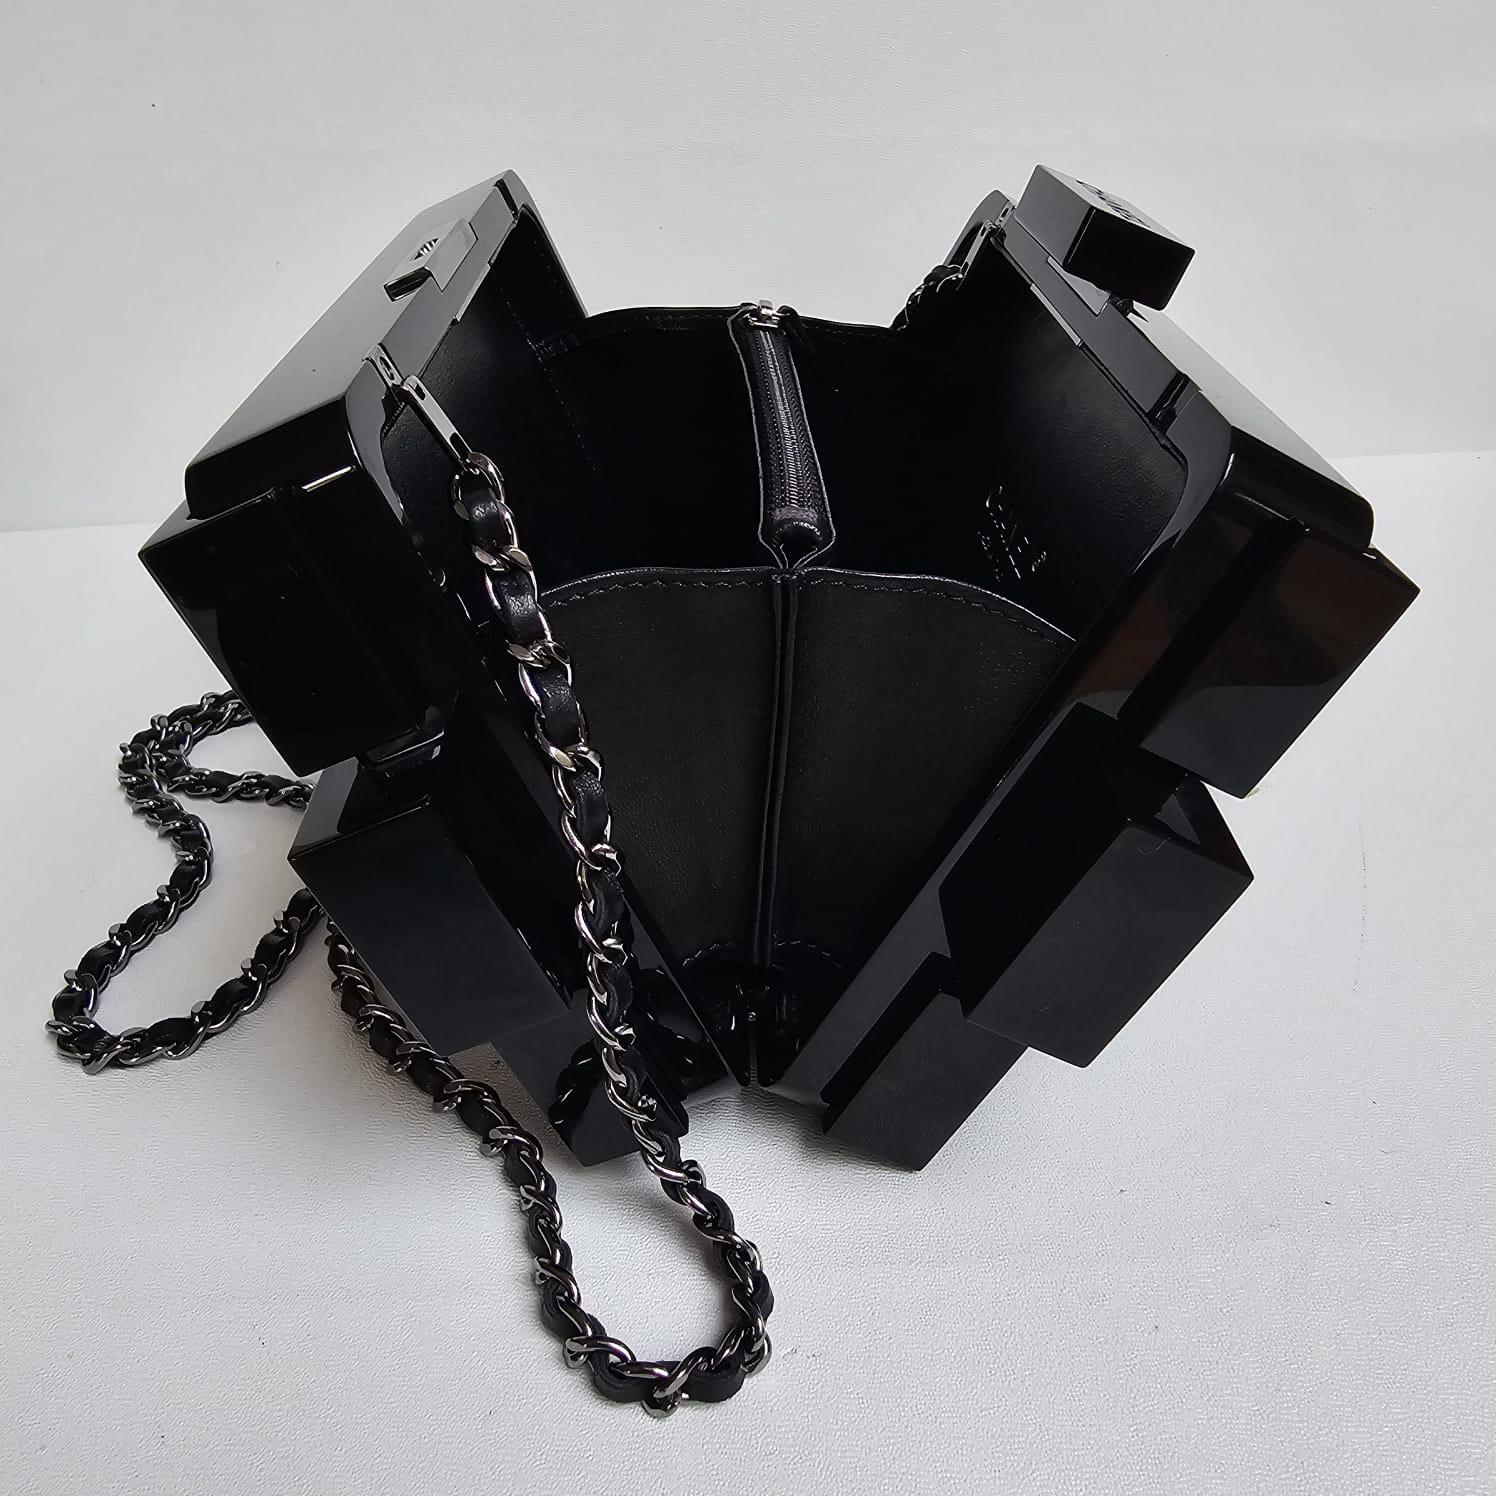 2013 Chanel Strass Crystal Lego Brick Clutch Bag 11